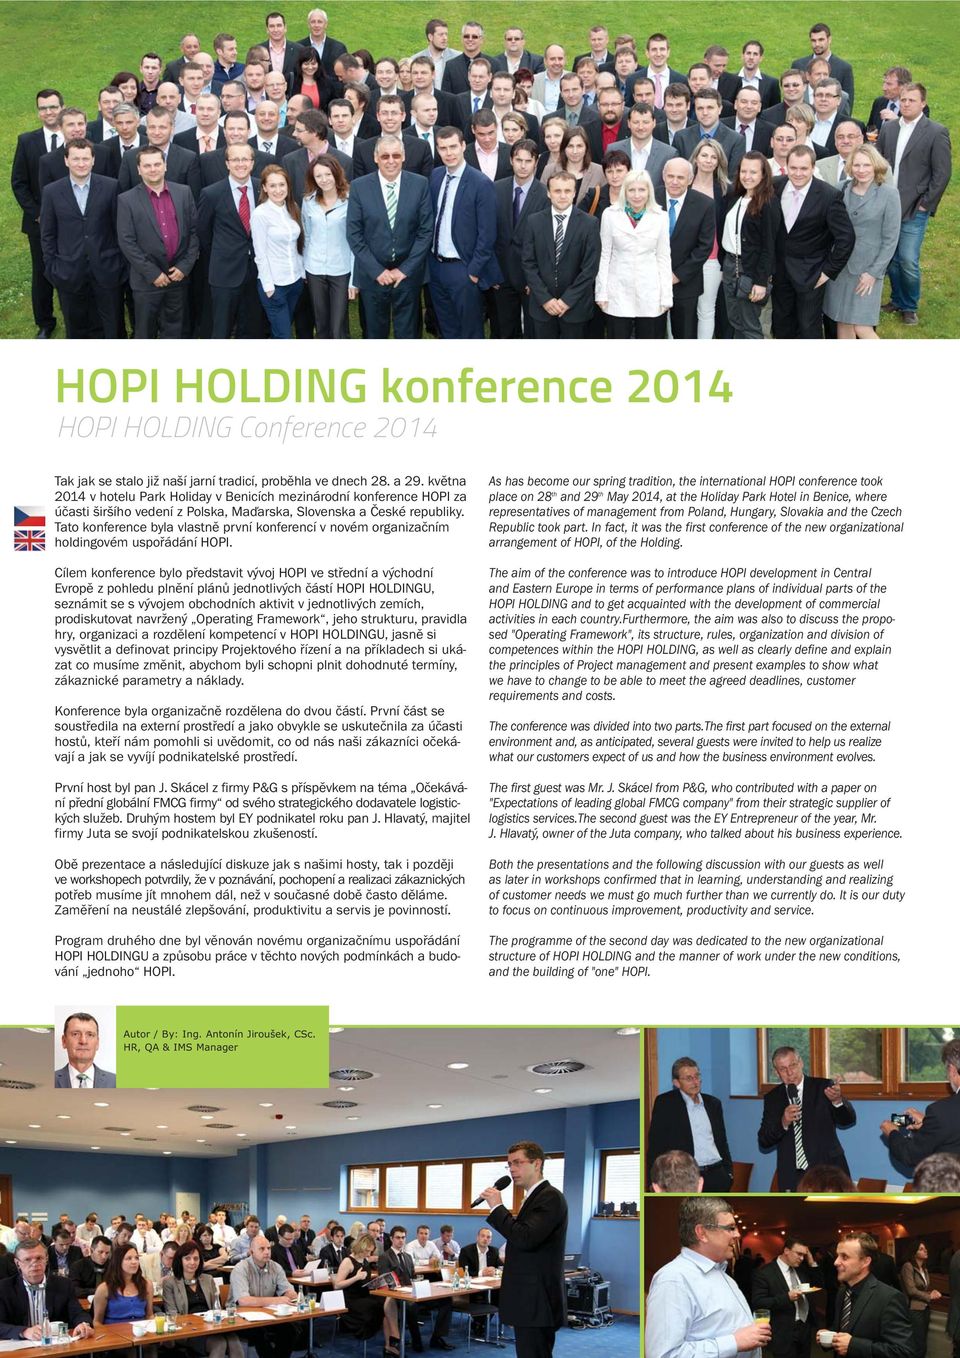 Tato konference byla vlastně první konferencí v novém organizačním holdingovém uspořádání HOPI.